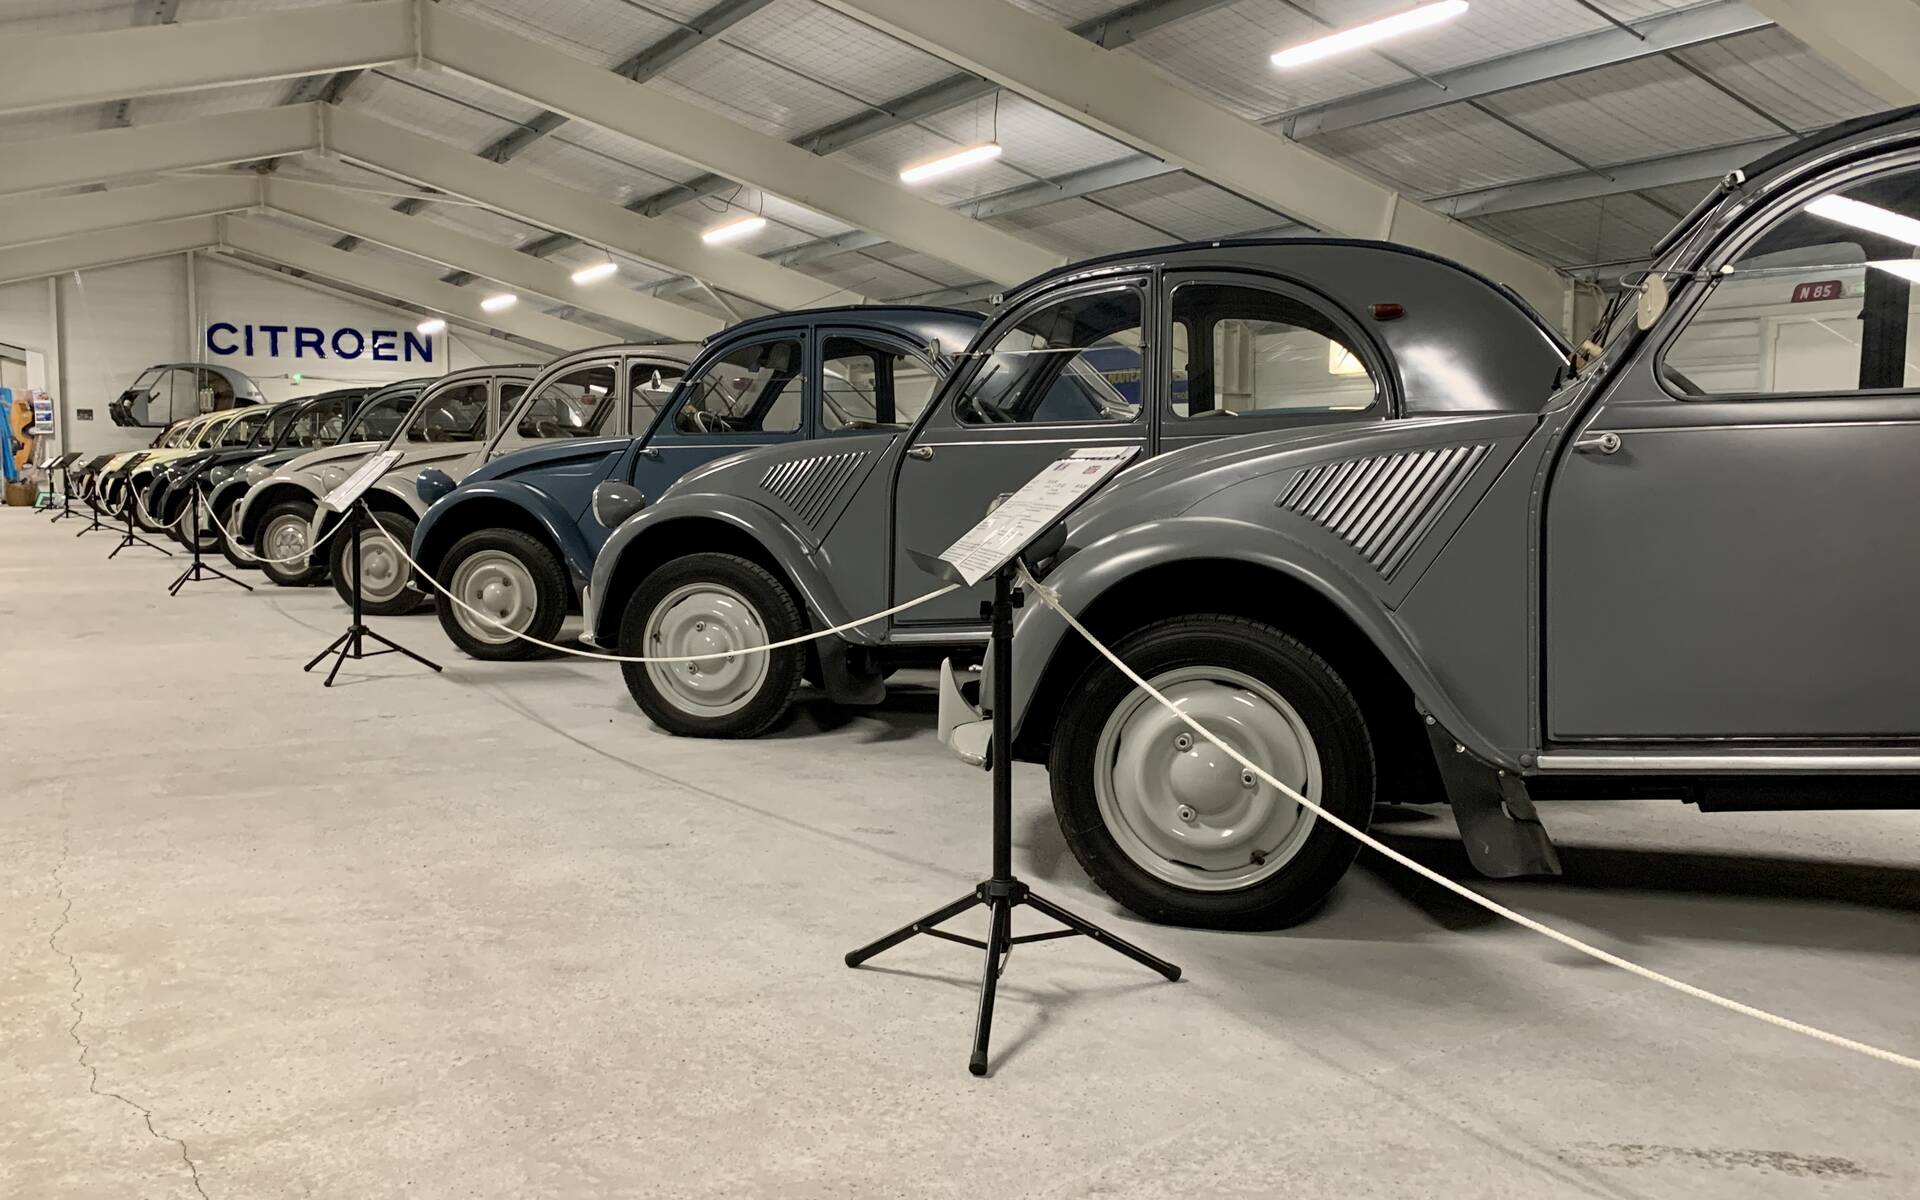 Photos: plus de 100 Citroën d'exception réunies dans un musée en France 543141-photos-plus-de-100-citroen-d-exception-reunies-dans-un-musee-en-france